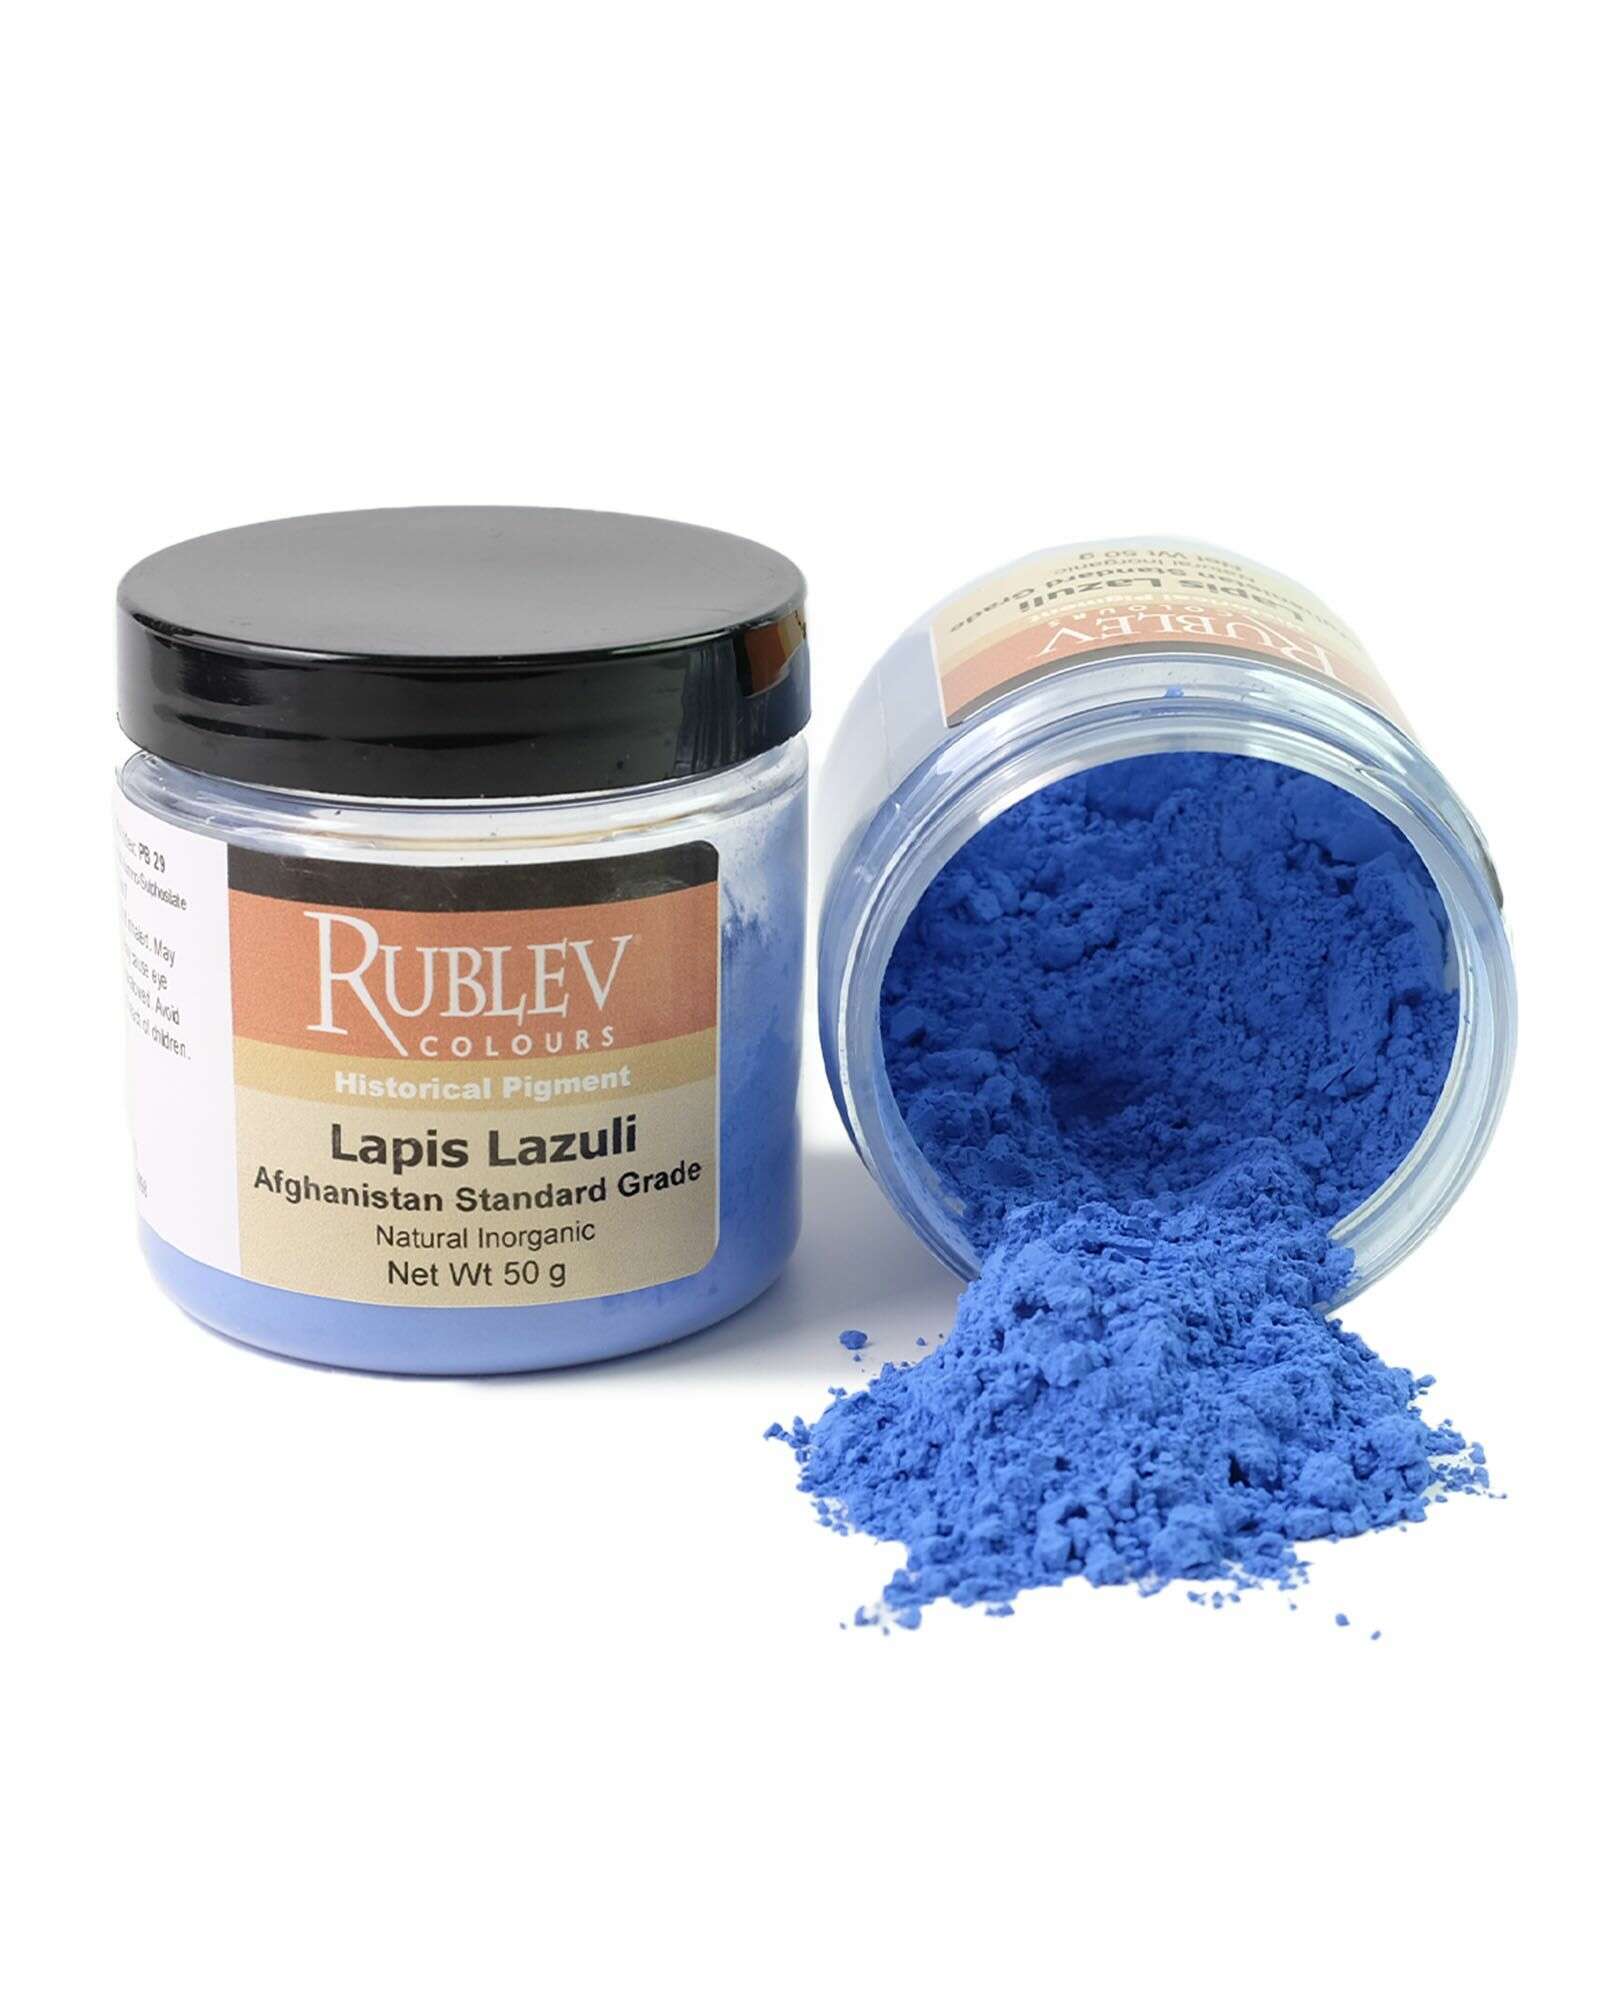 Shop Natural Pigments - Lapis Lazuli, Rublev Colours Lapis Lazuli Pigment